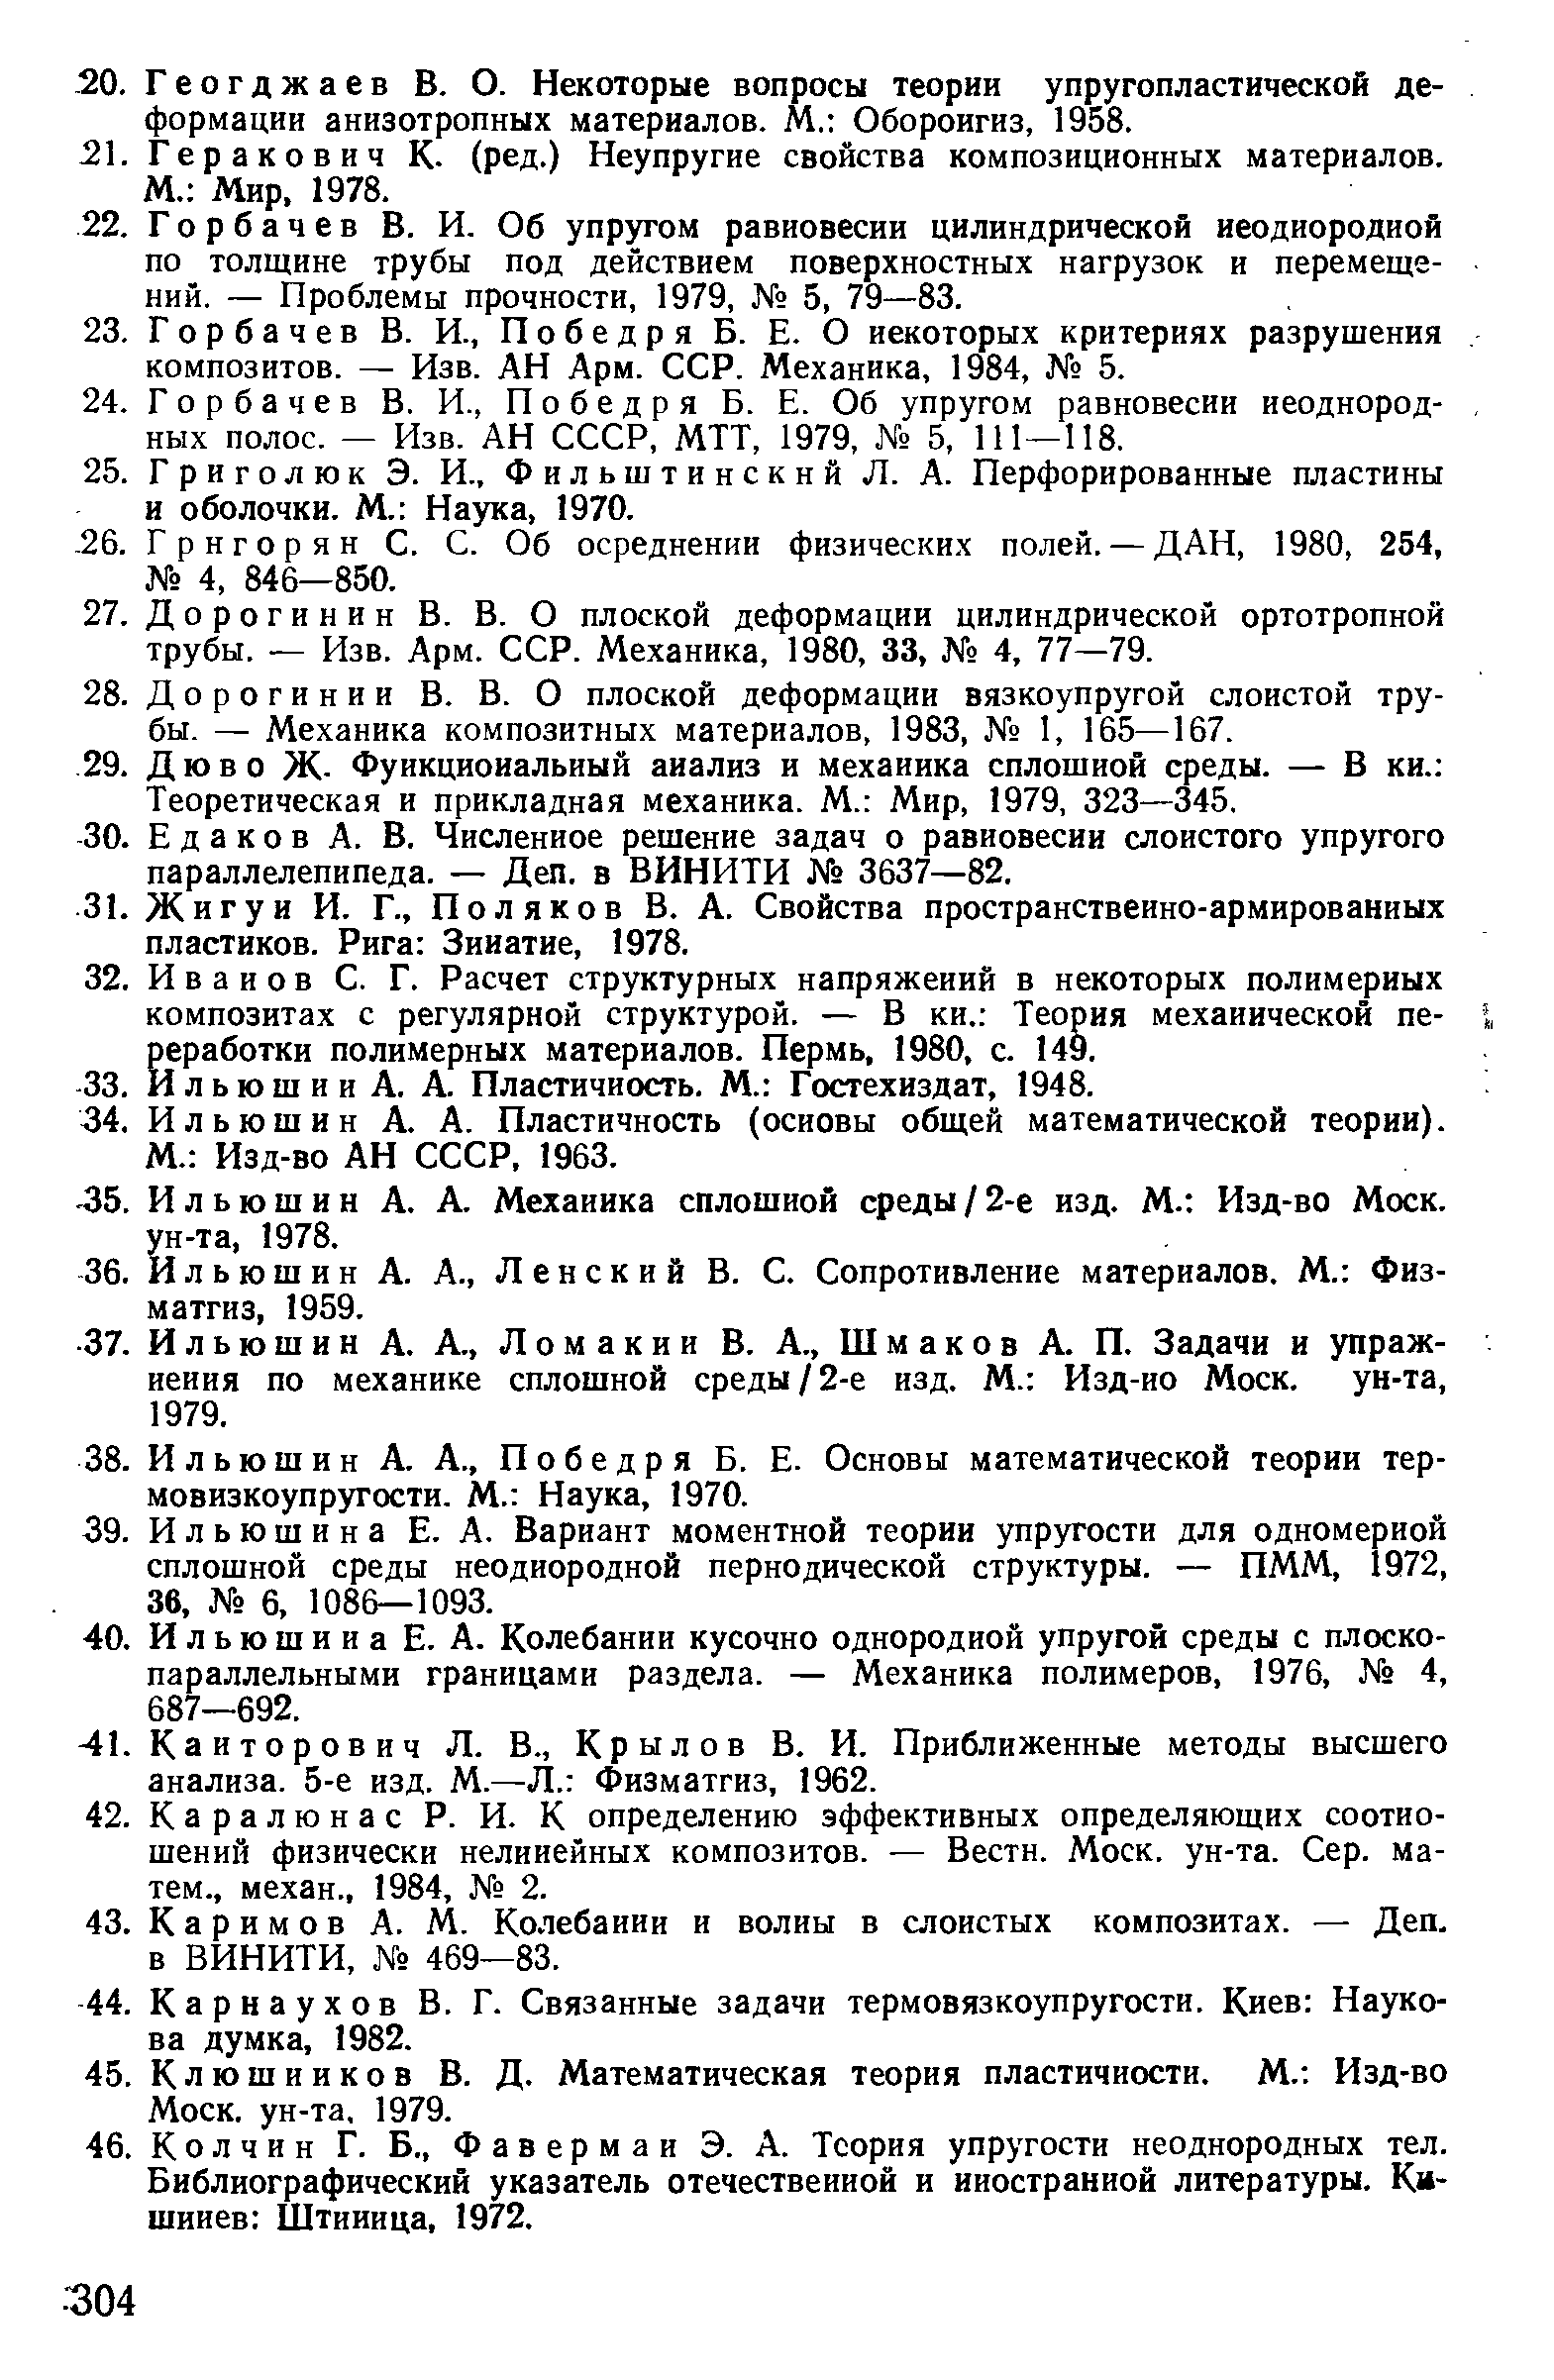 Ильюшин А. А. Механика сплошной среды/2-е изд. М. Изд-во Моек, ун-та, 1978.
